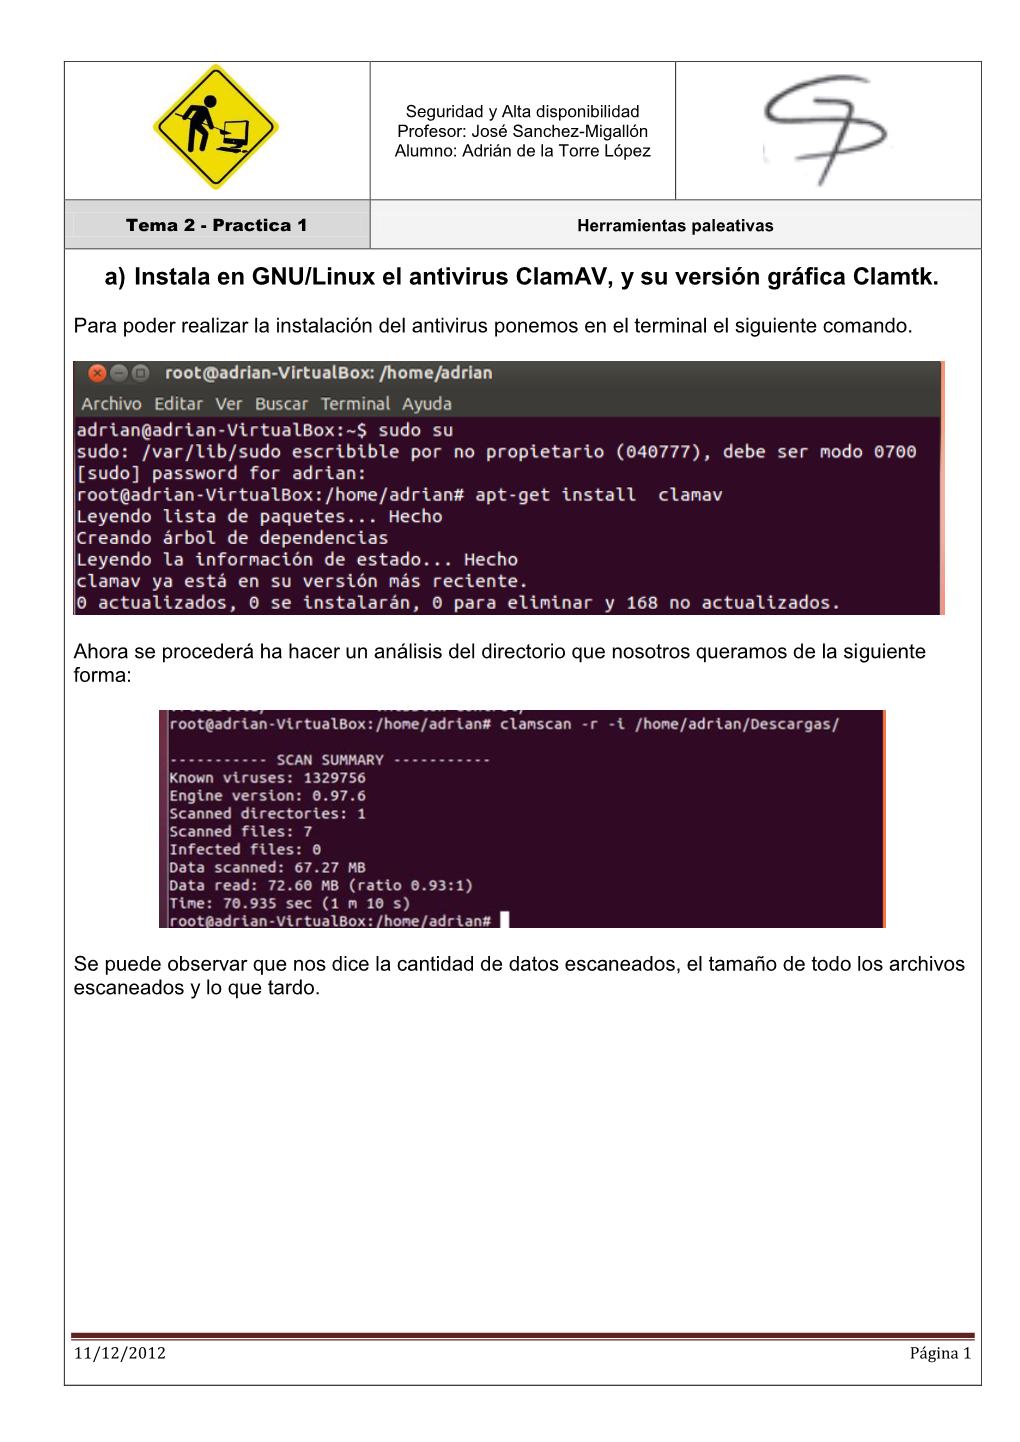 A) Instala En GNU/Linux El Antivirus Clamav, Y Su Versión Gráfica Clamtk